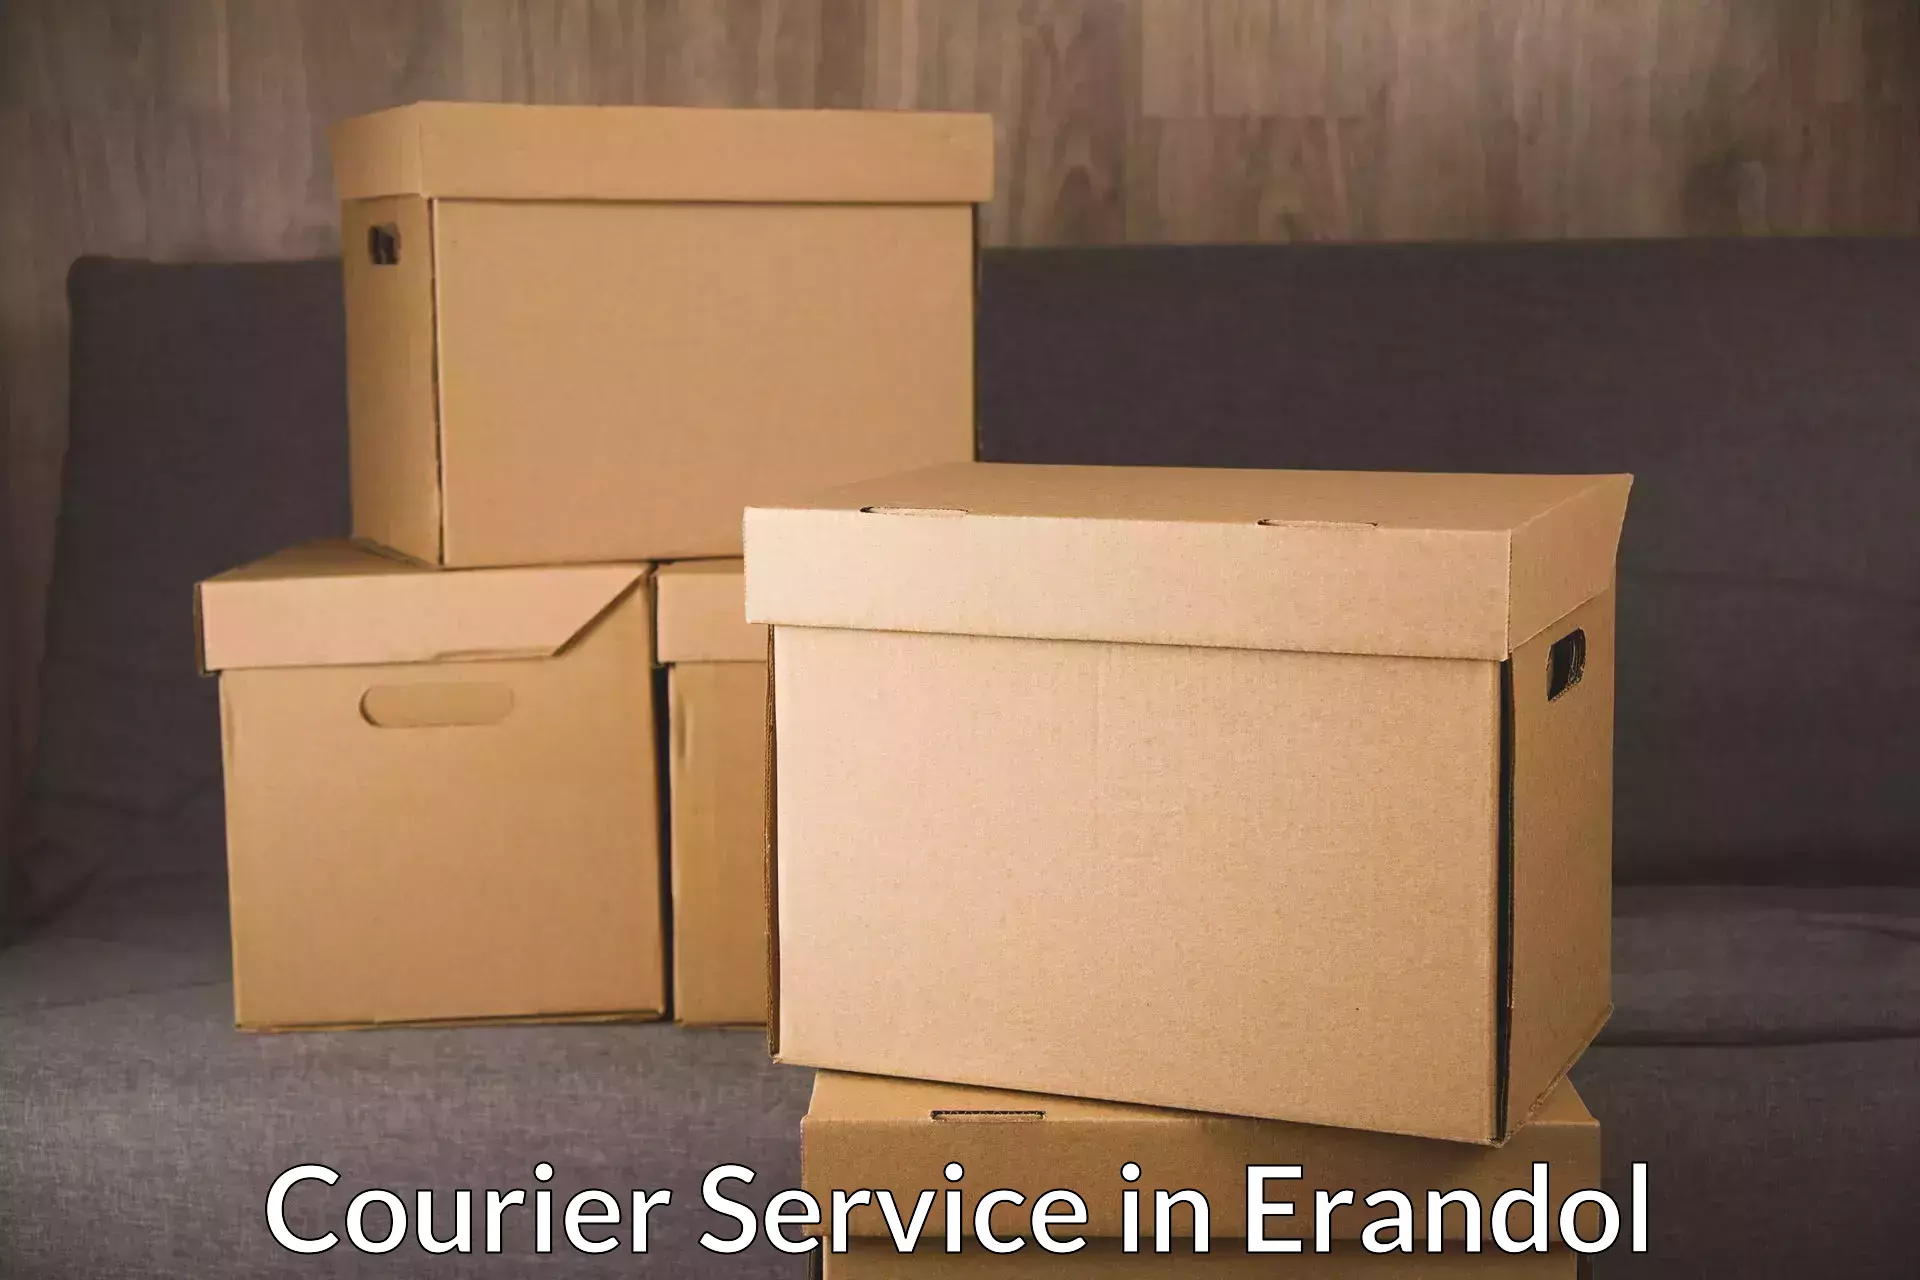 Secure packaging in Erandol